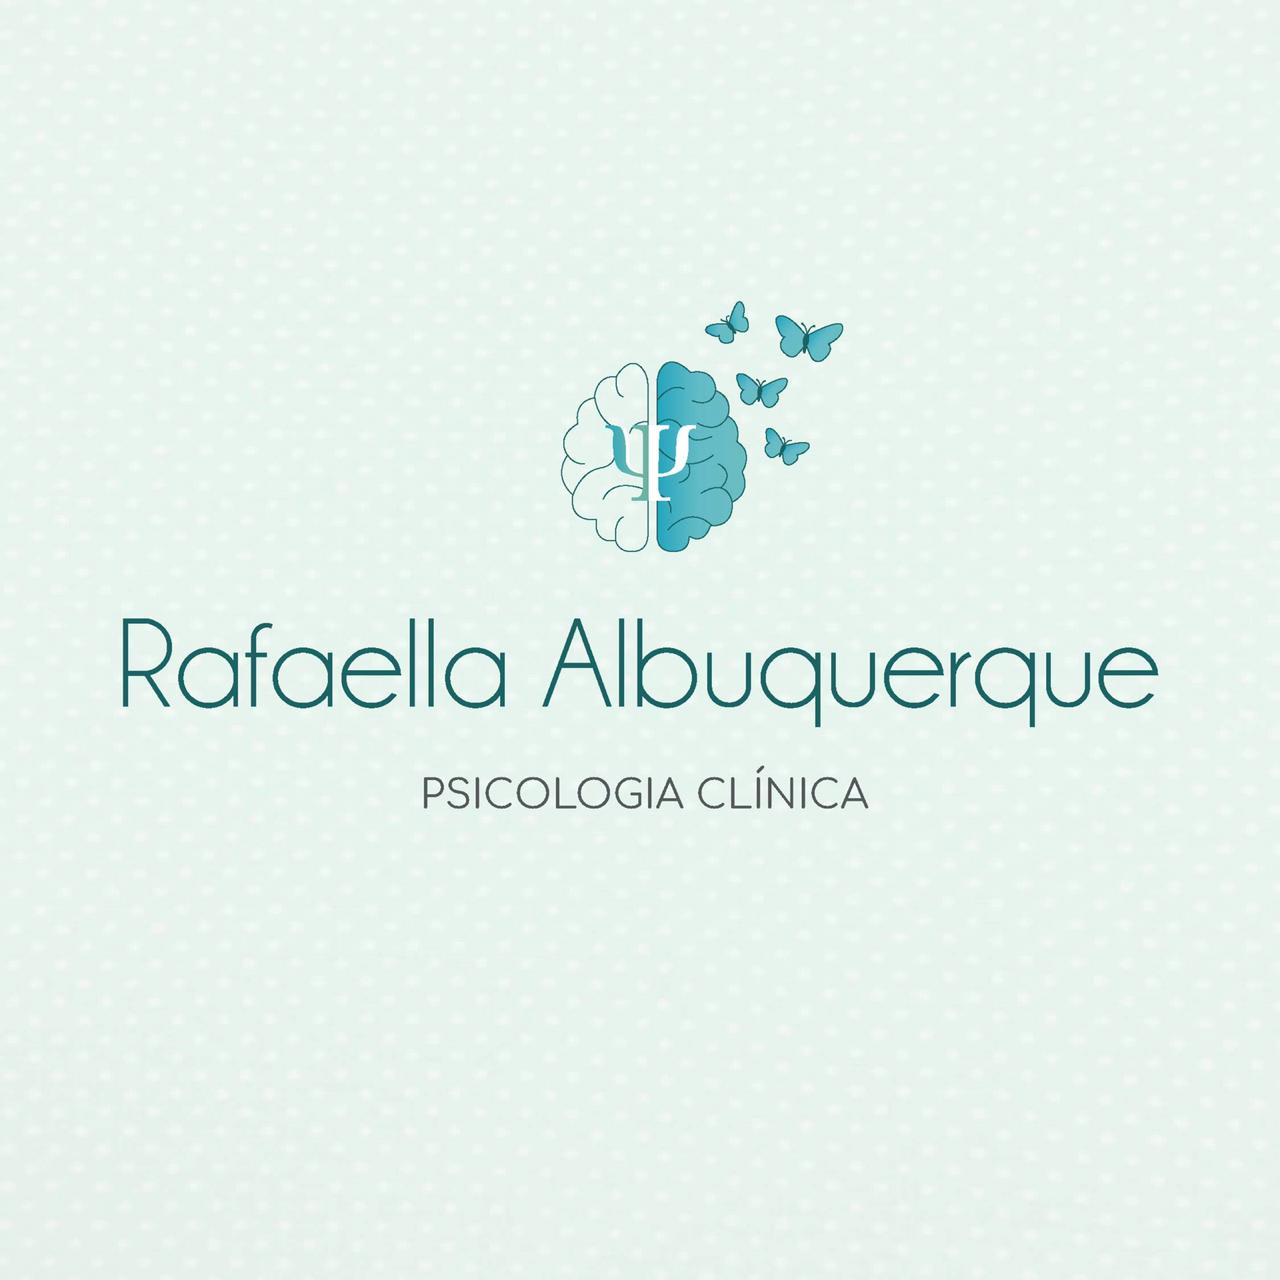 Consultório Rafaella Albuquerque